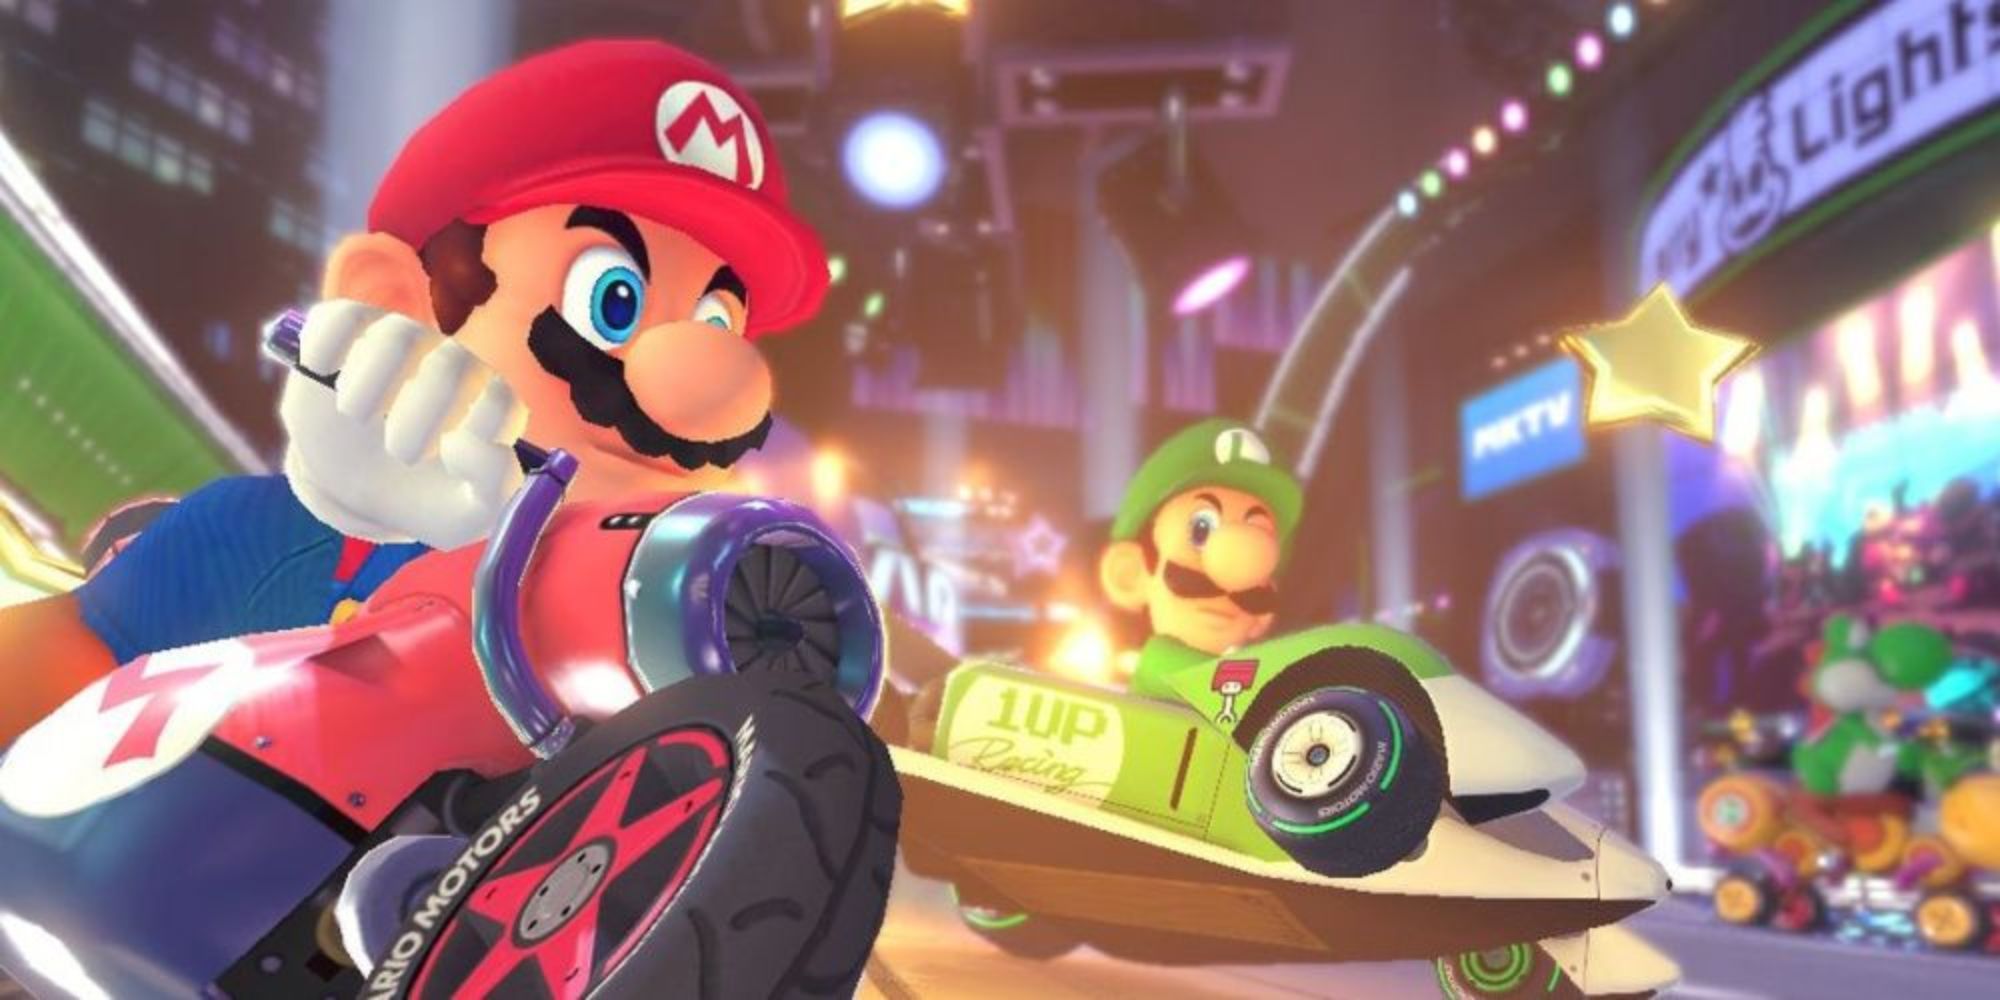 Mario and Luigi Racing in Mario Kart 8 Deluxe